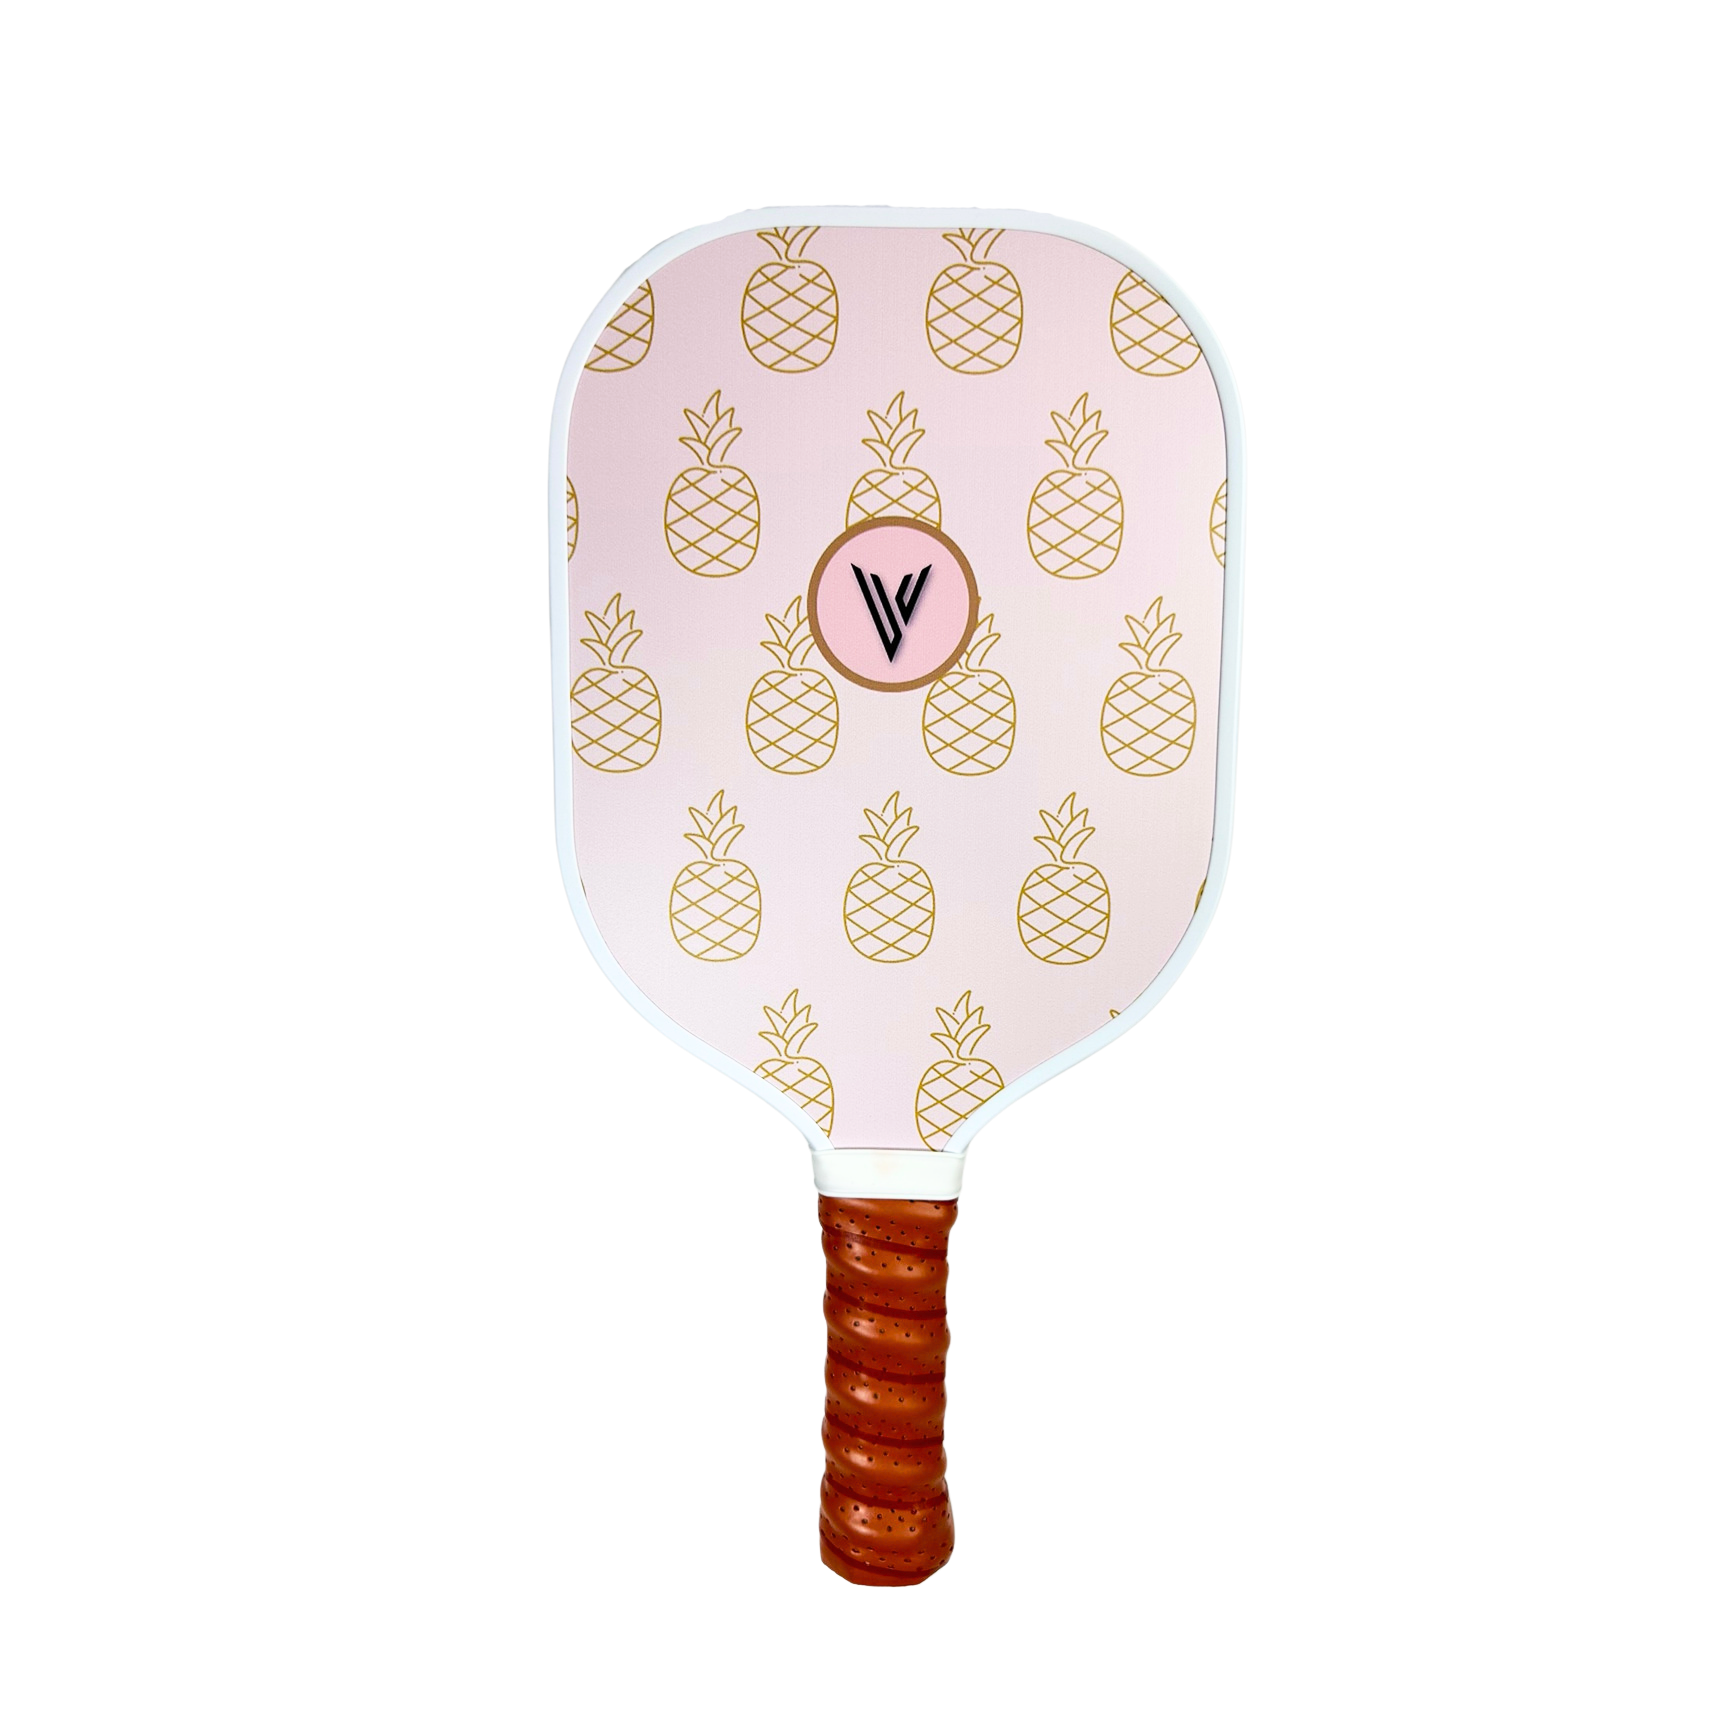 Louis Vuitton Paddle Racquet Set